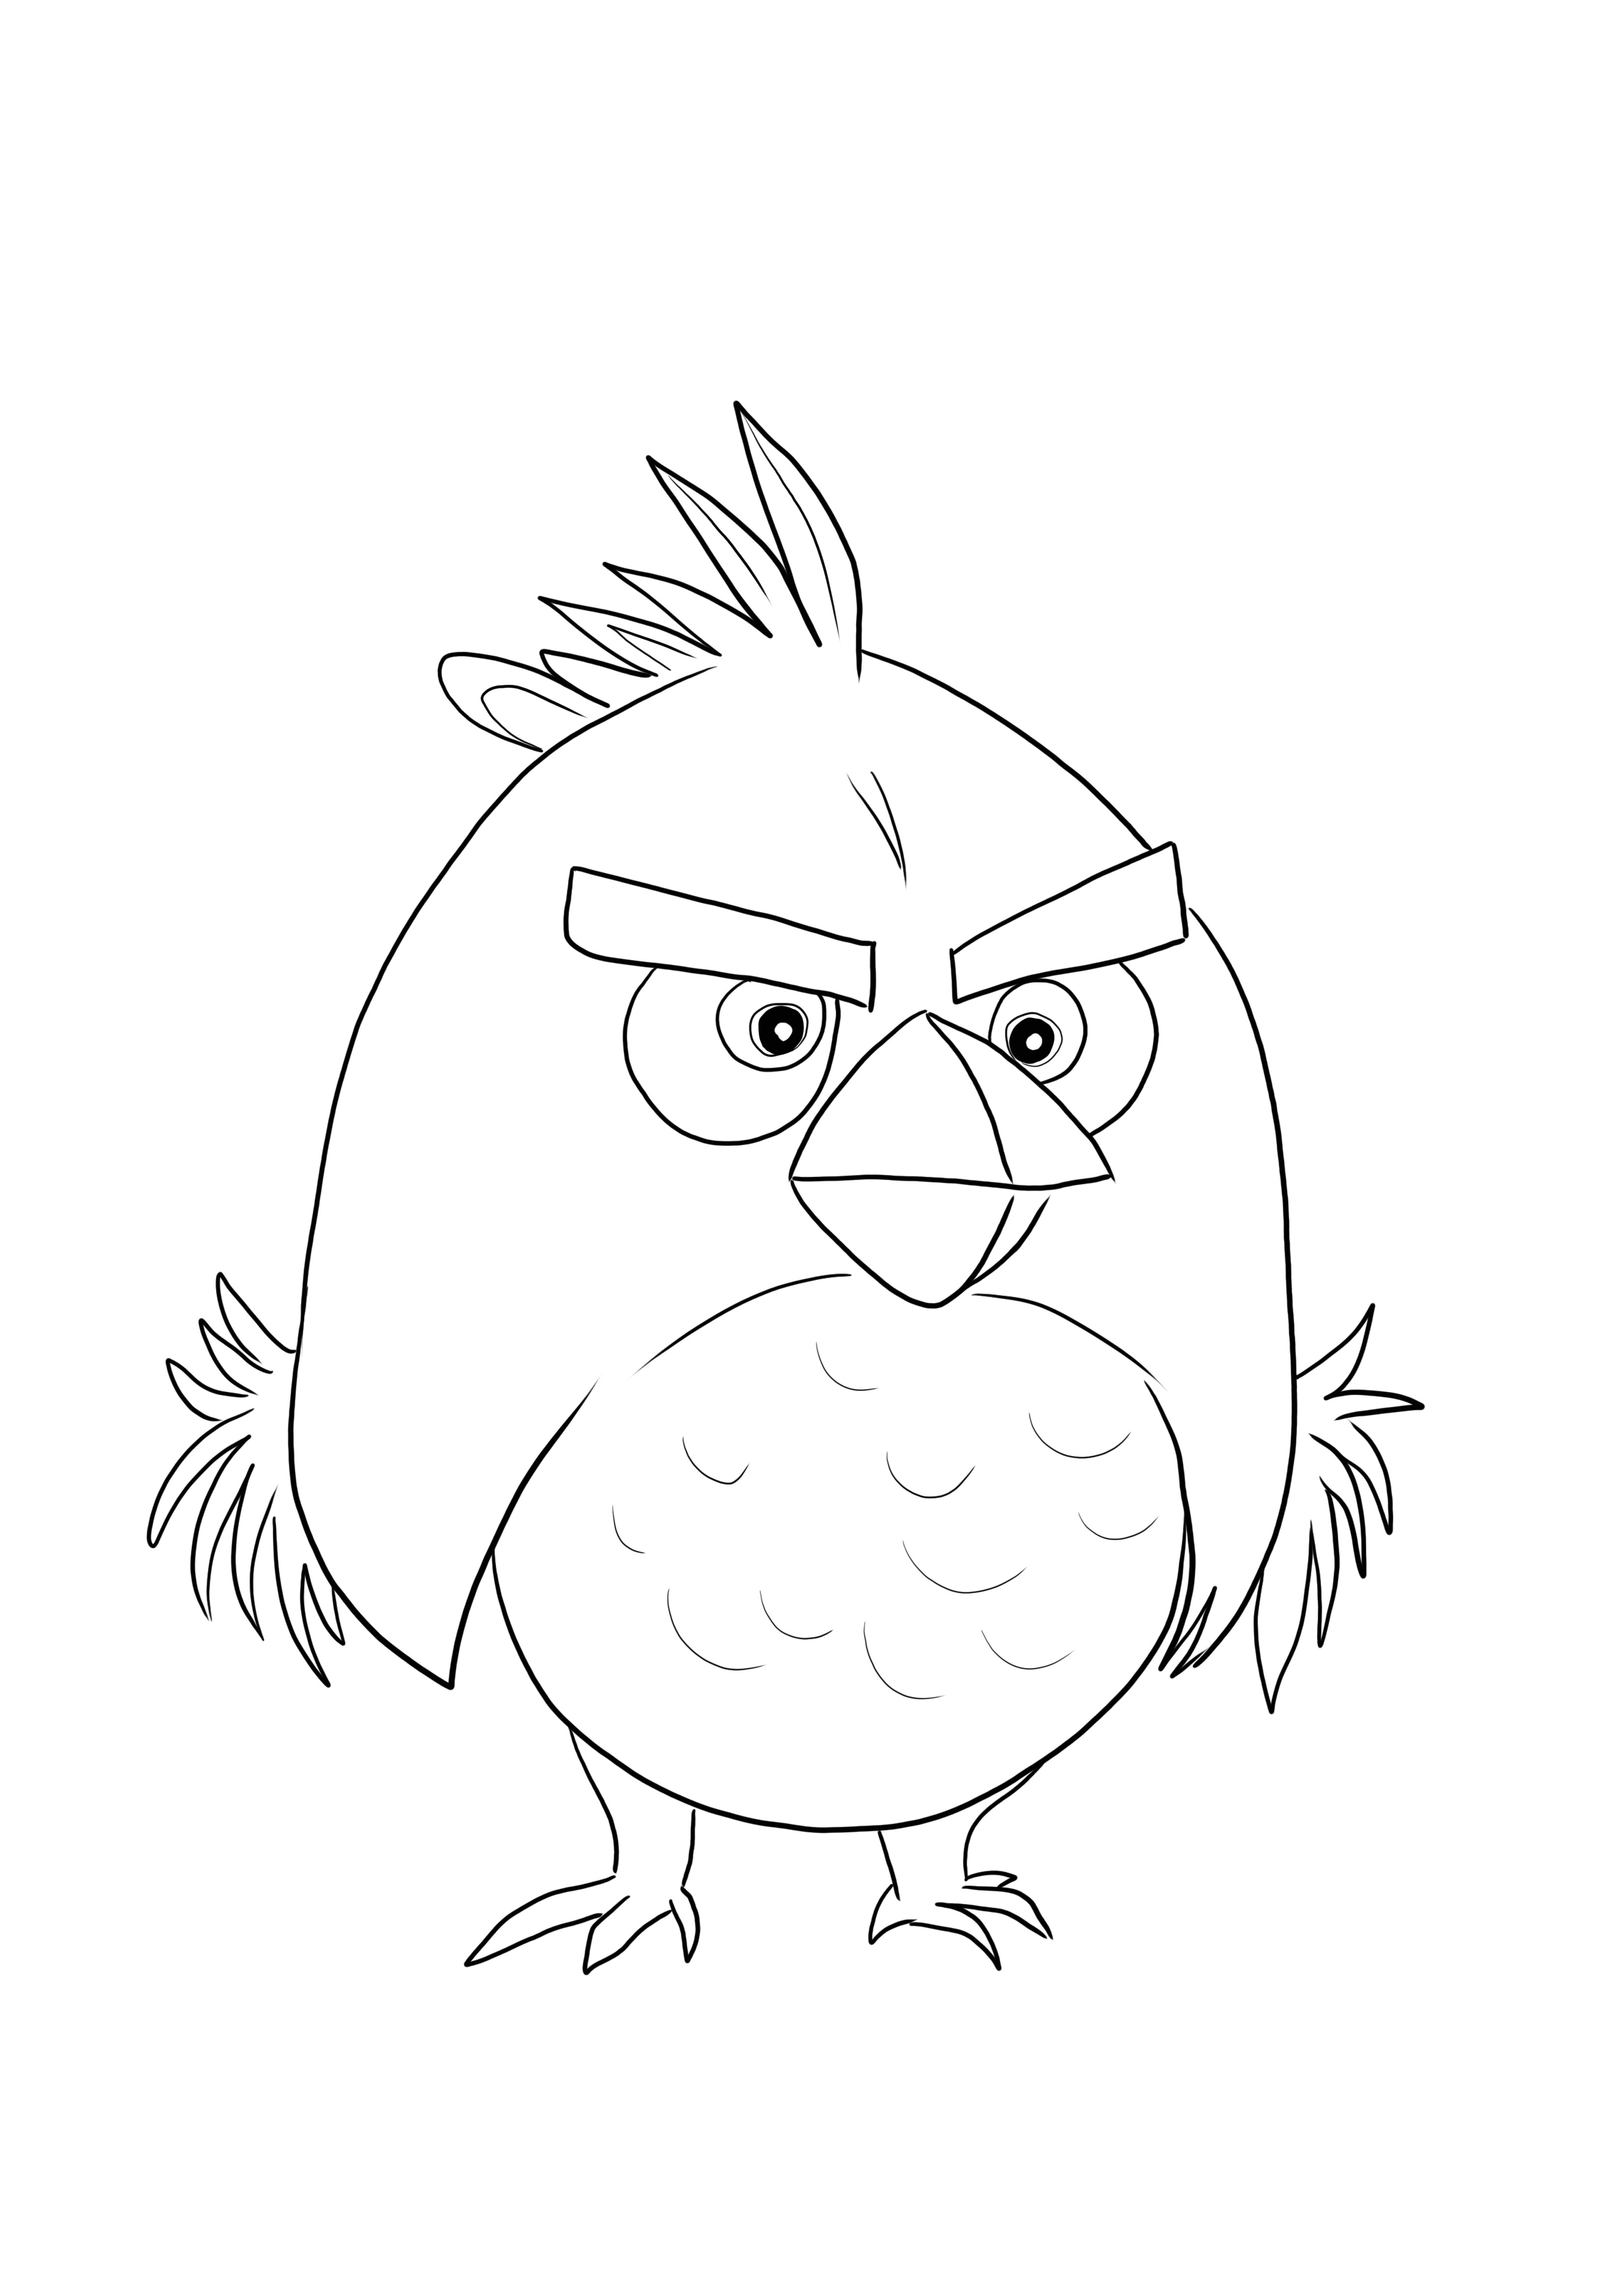 Red Bird di Angry Birds è pronto per essere stampato e colorato con i colori preferiti